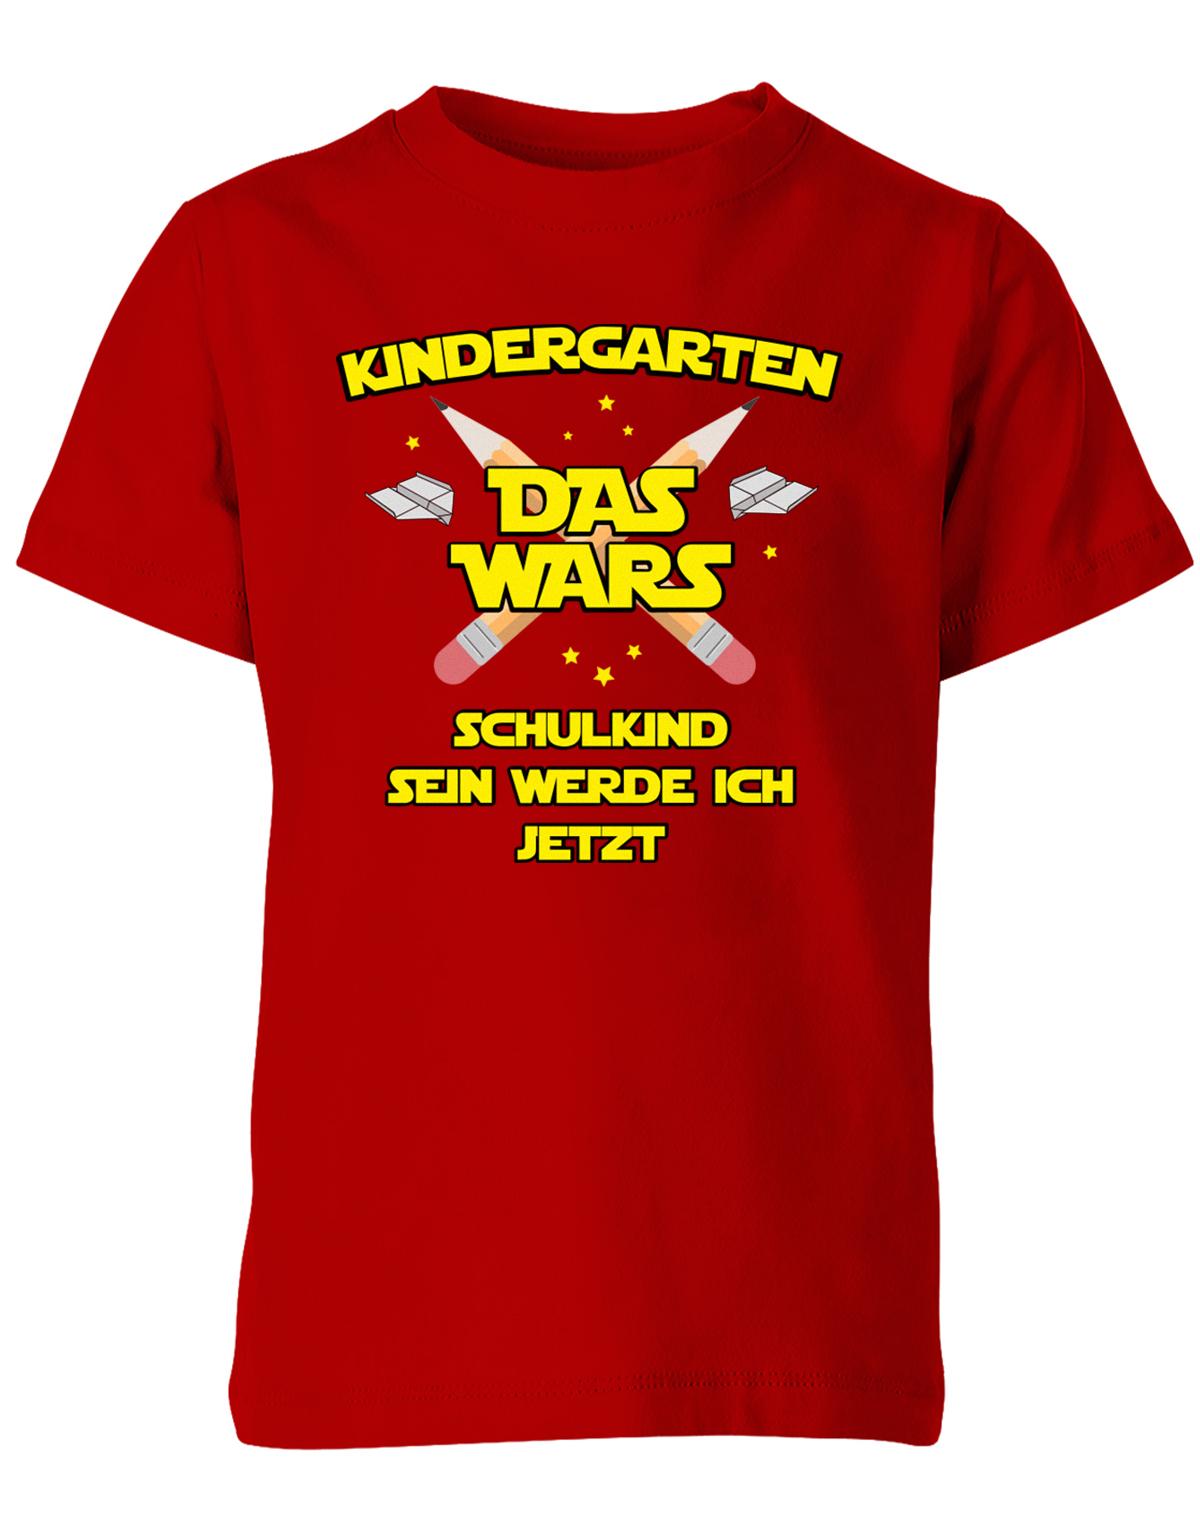 Kindergarten Das Wars Schulkind sein werde ich jetzt - Kita Abgänger Shirt Rot